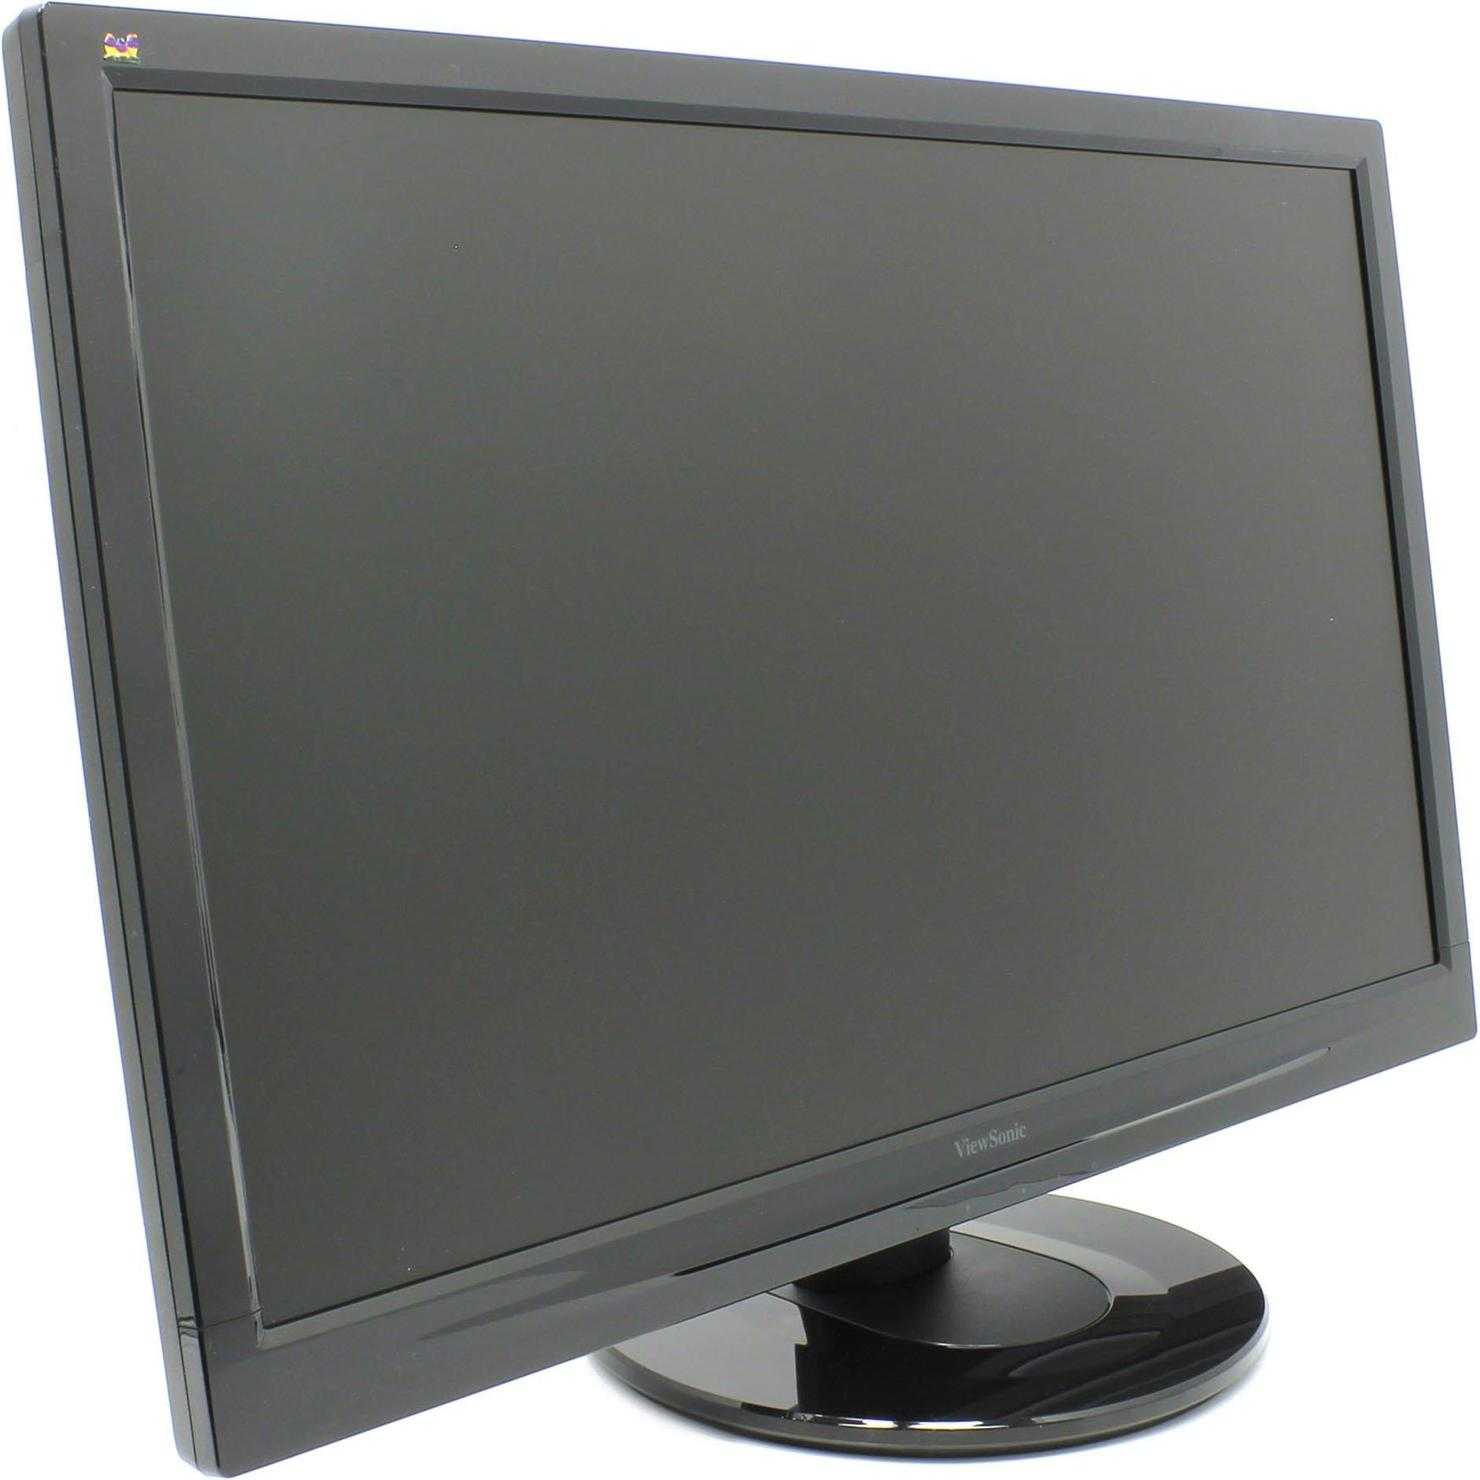 Viewsonic va2746-led (черный) - купить , скидки, цена, отзывы, обзор, характеристики - мониторы